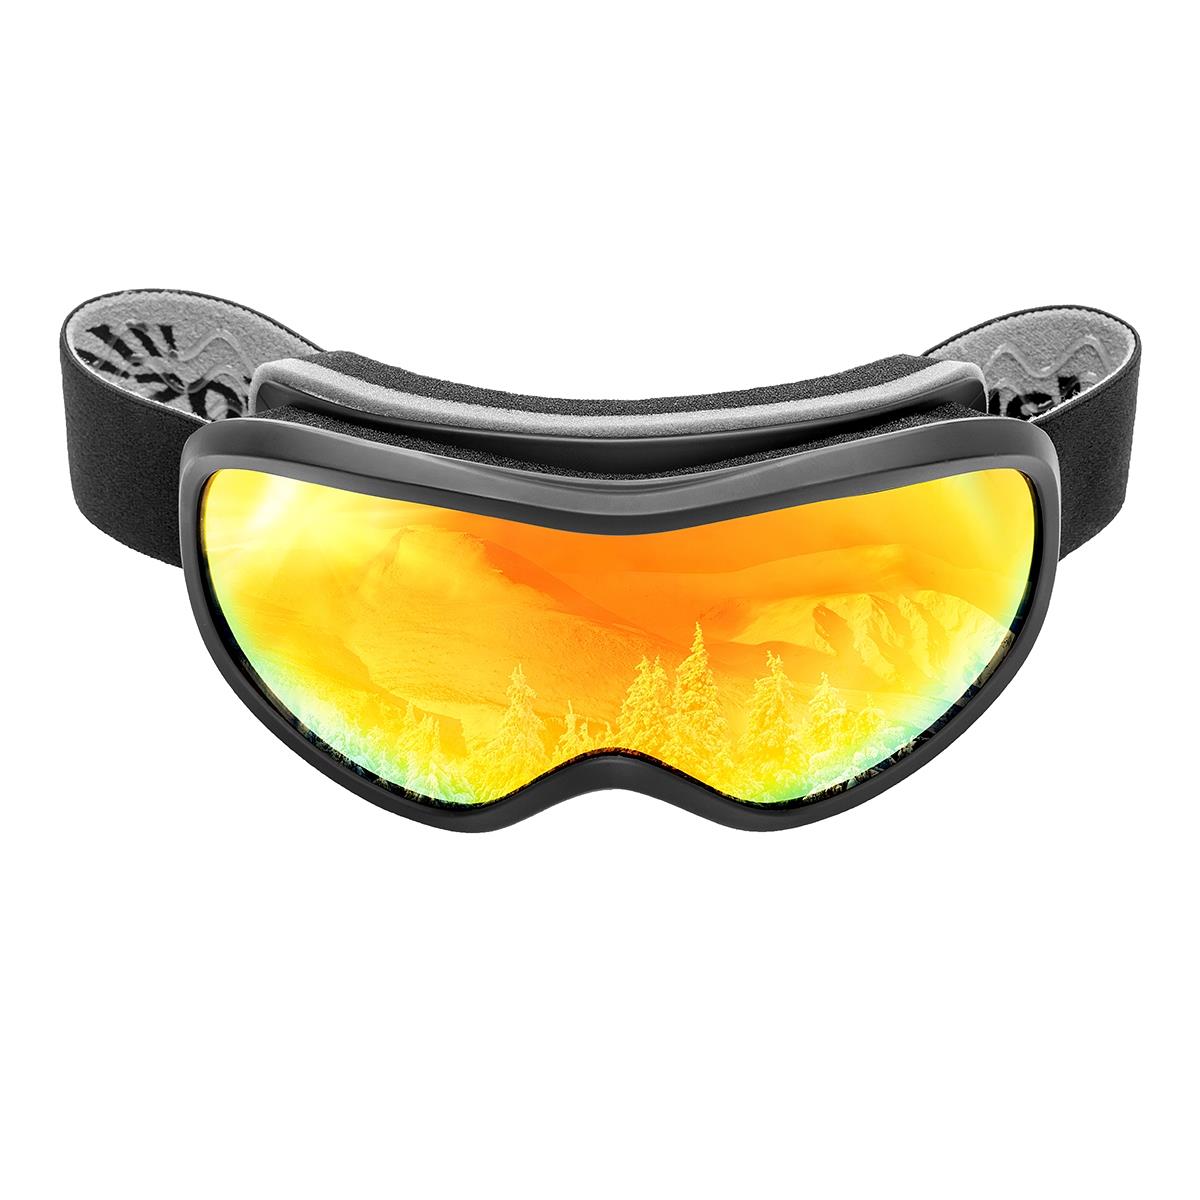 Очки горнолыжные HS-HX-043 Helios очки для плавания взрослые uv защита